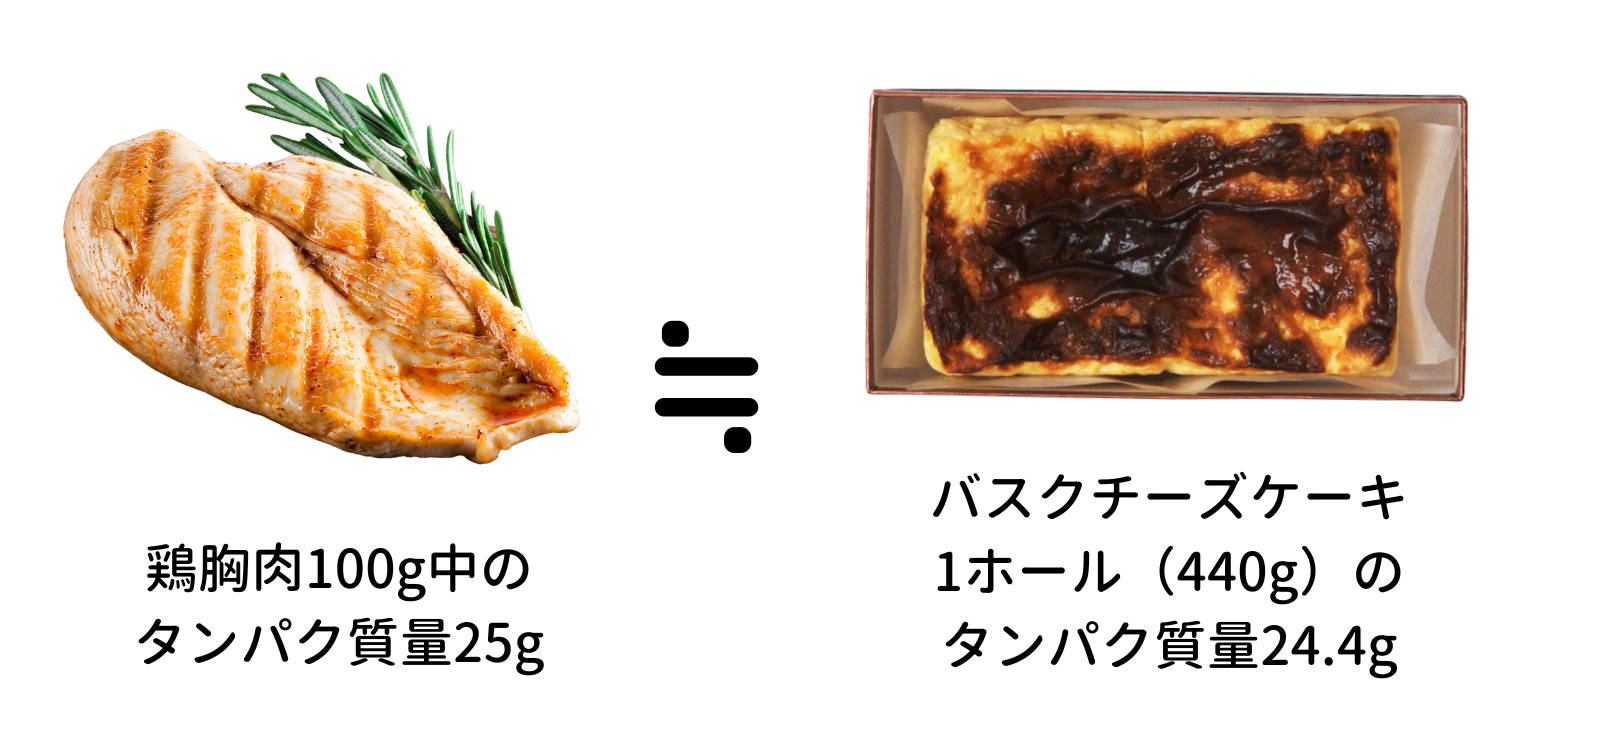 フスボンバスクチーズケーキに含まれるタンパク質量を鶏胸肉と比較